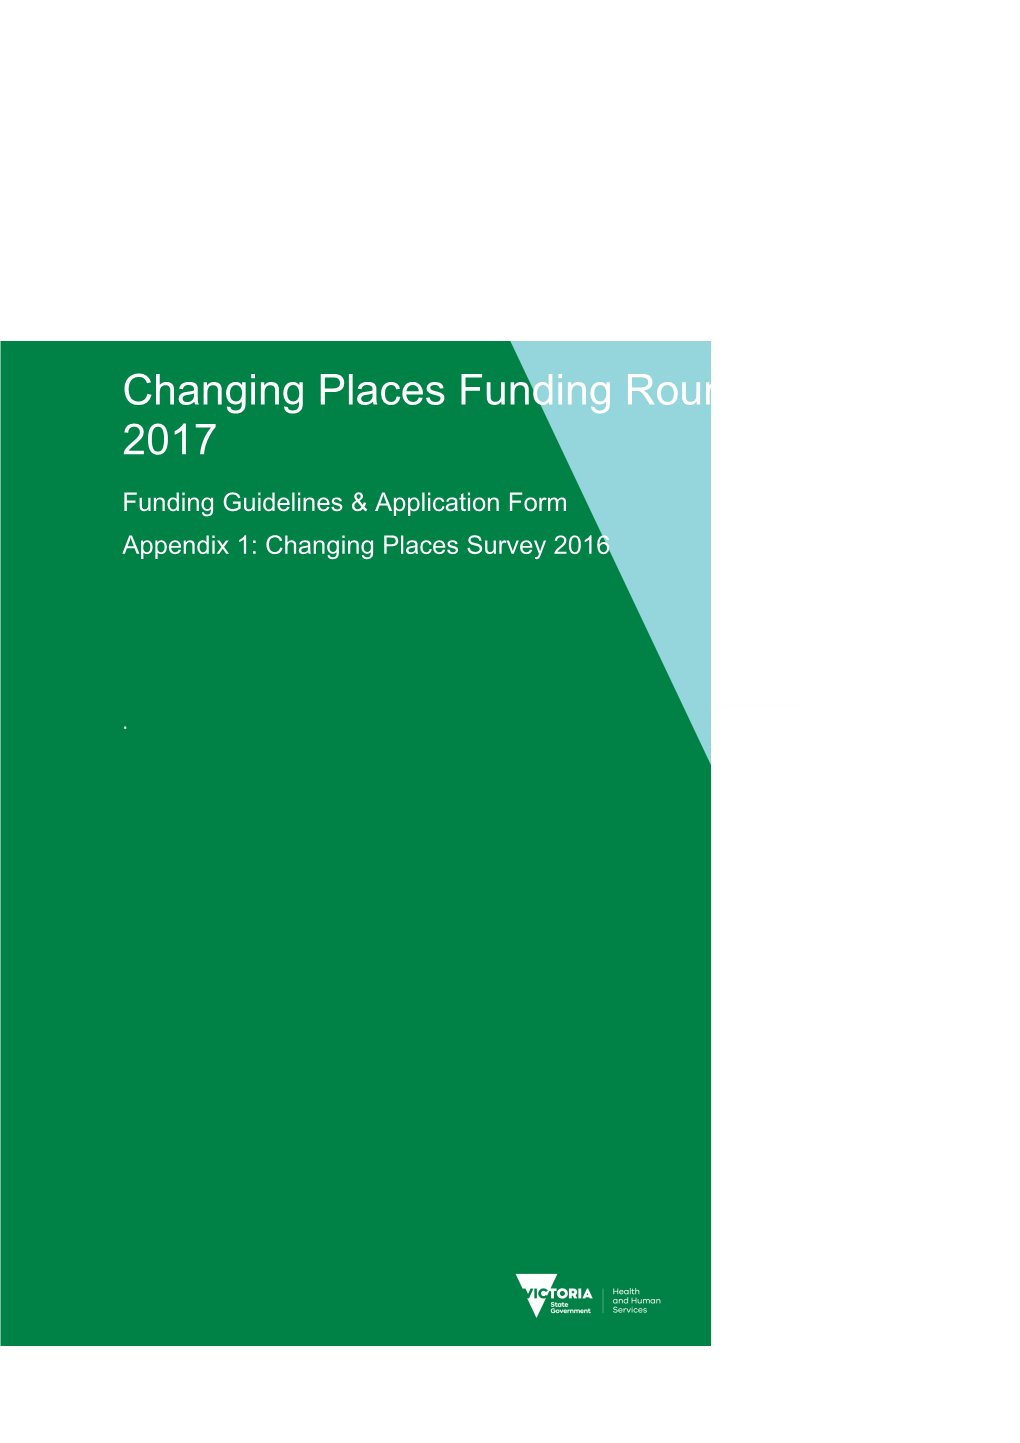 Appendix 1: Changing Places Survey 2016